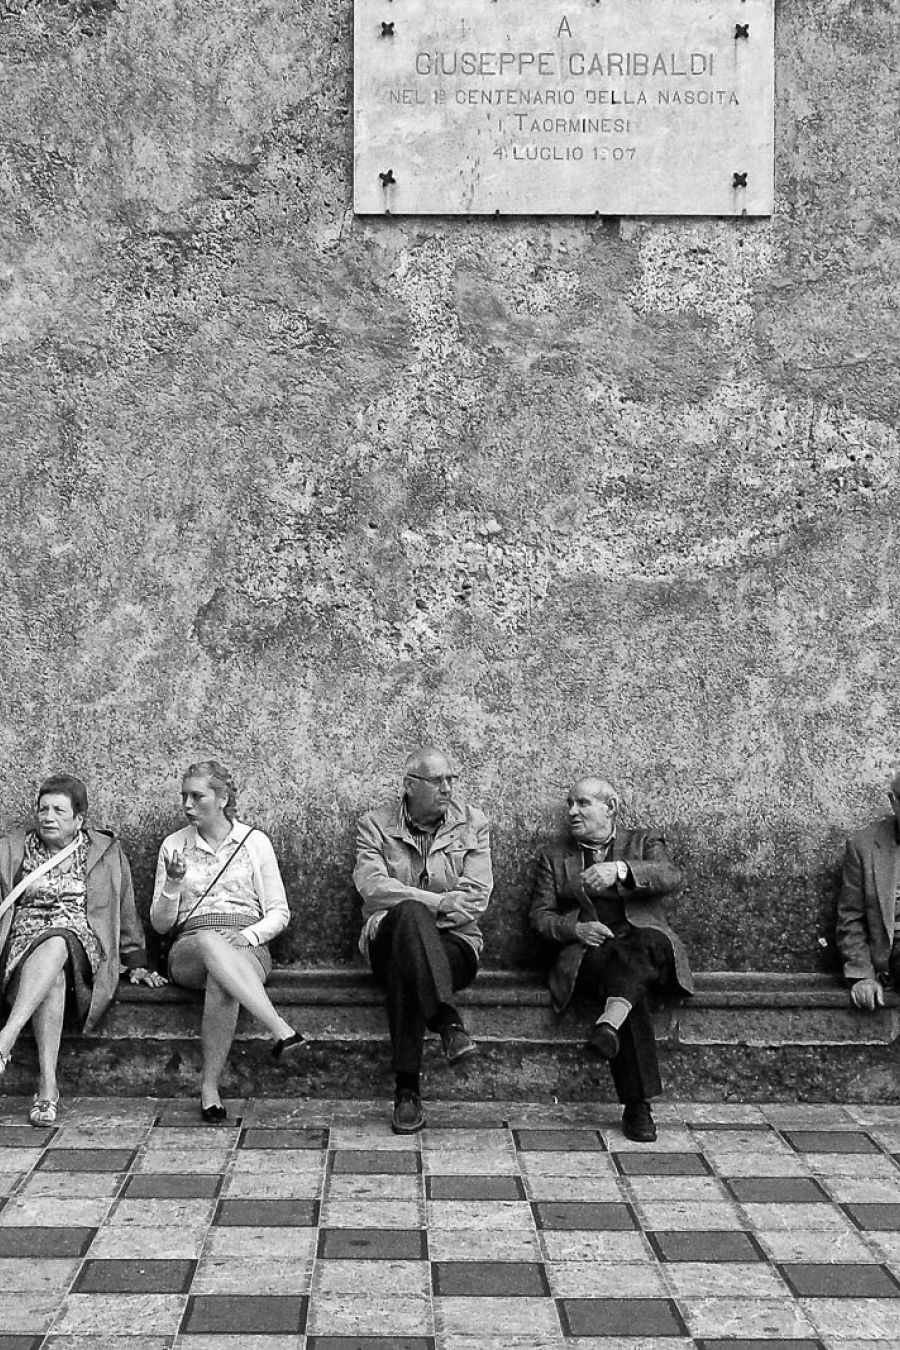 Italiener sitzen auf ein Bank in Schwarz-Weiss fotografiert.